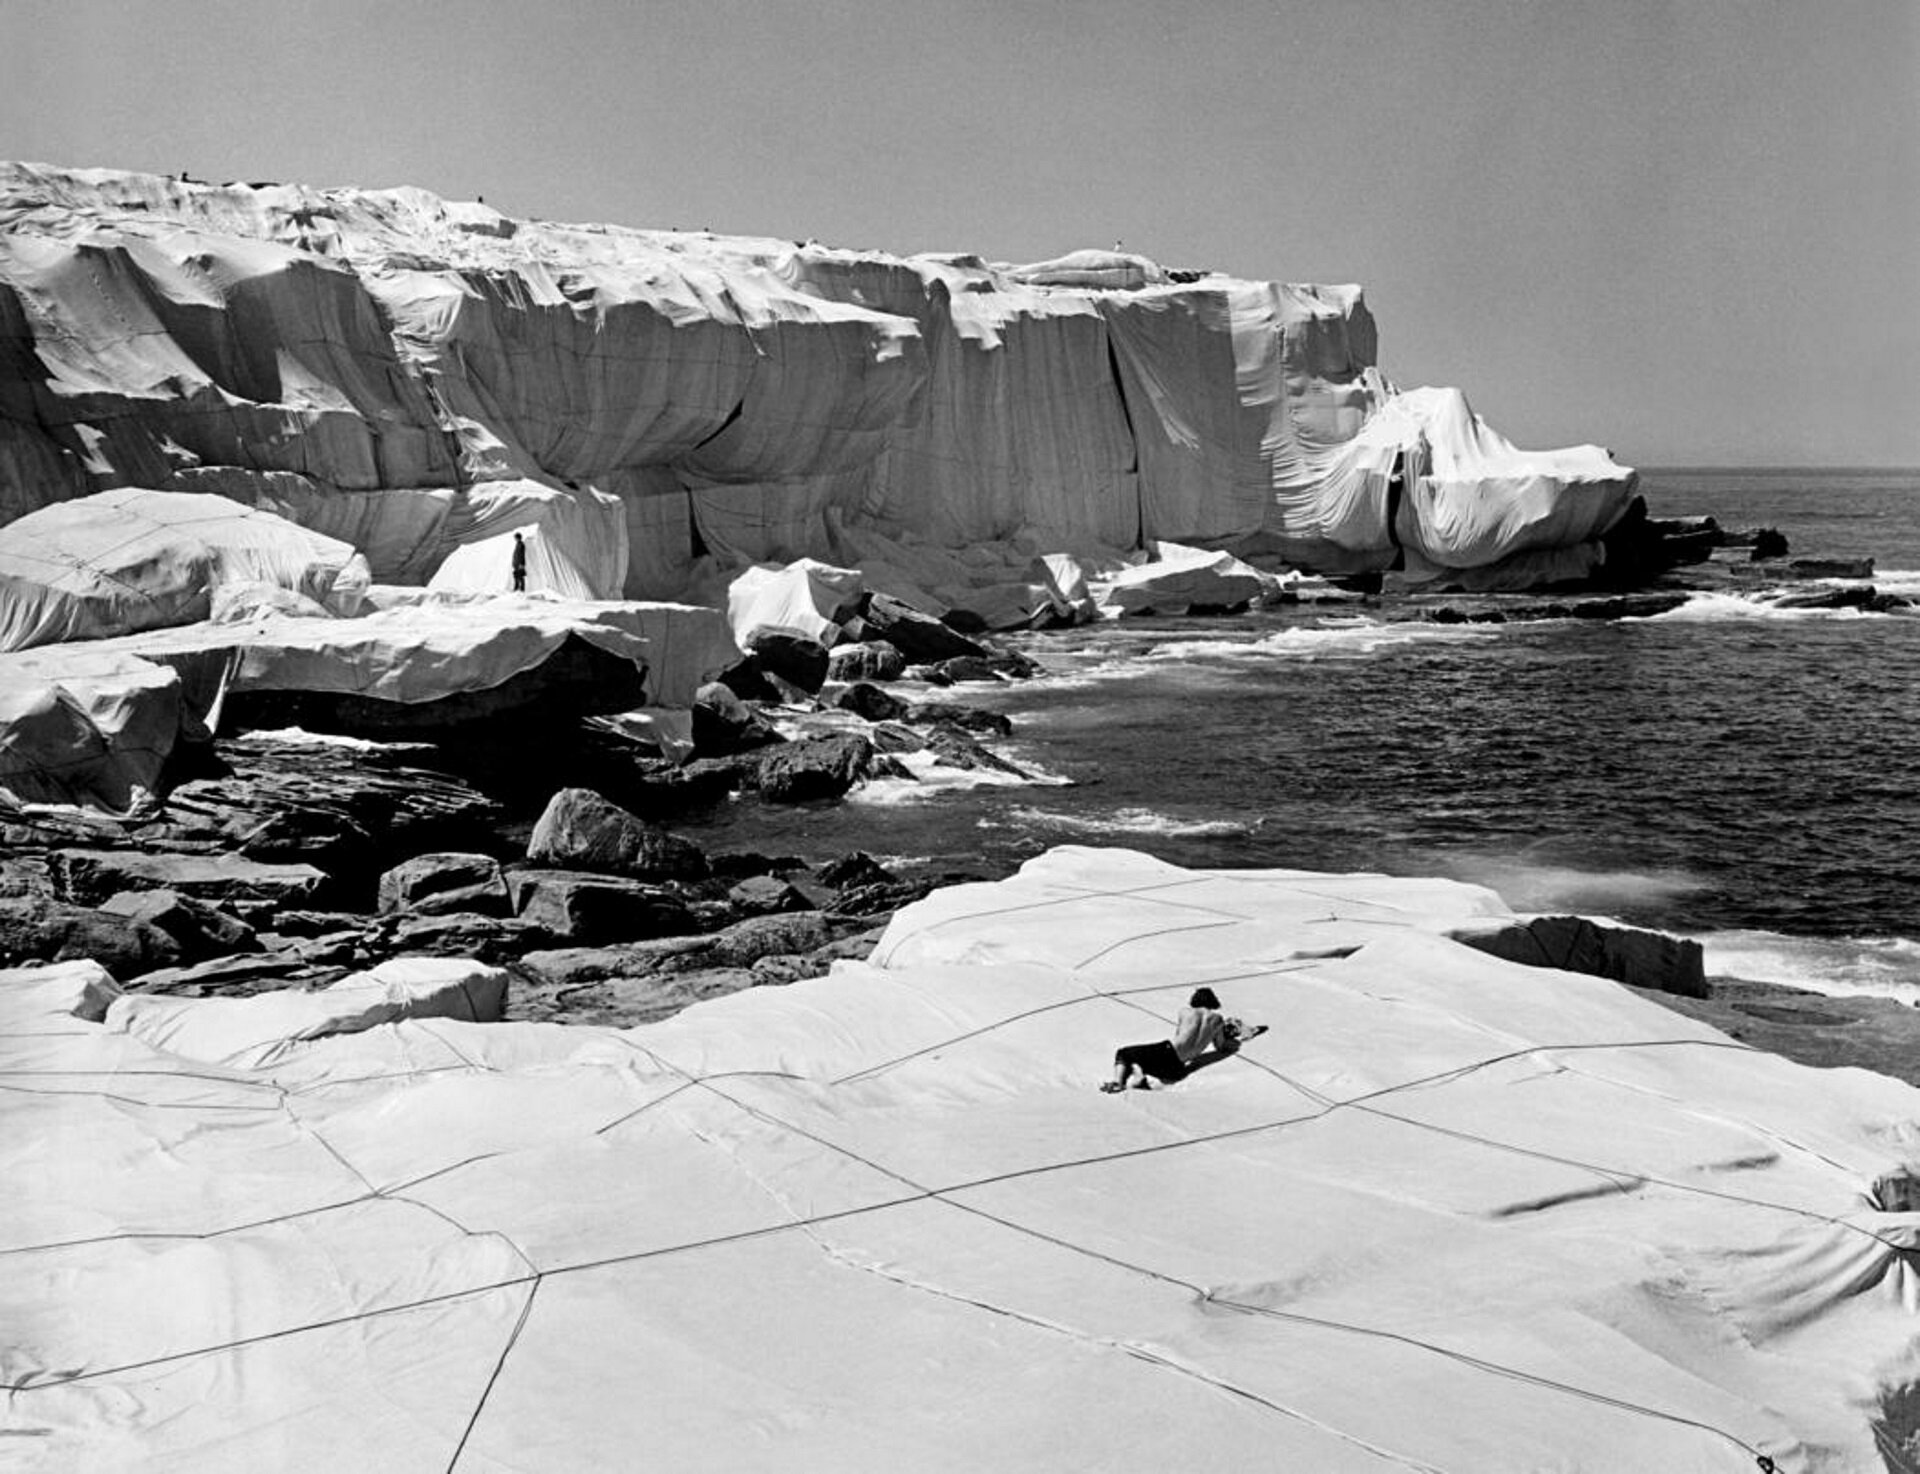 Ilustracja przedstawia dzieło Christo i Jeanne-Claude. Czarno-biała fotografia ukazuje australijskie wybrzeże owinięte kwadratowymi tkaninami przymocowanymi do skał. 